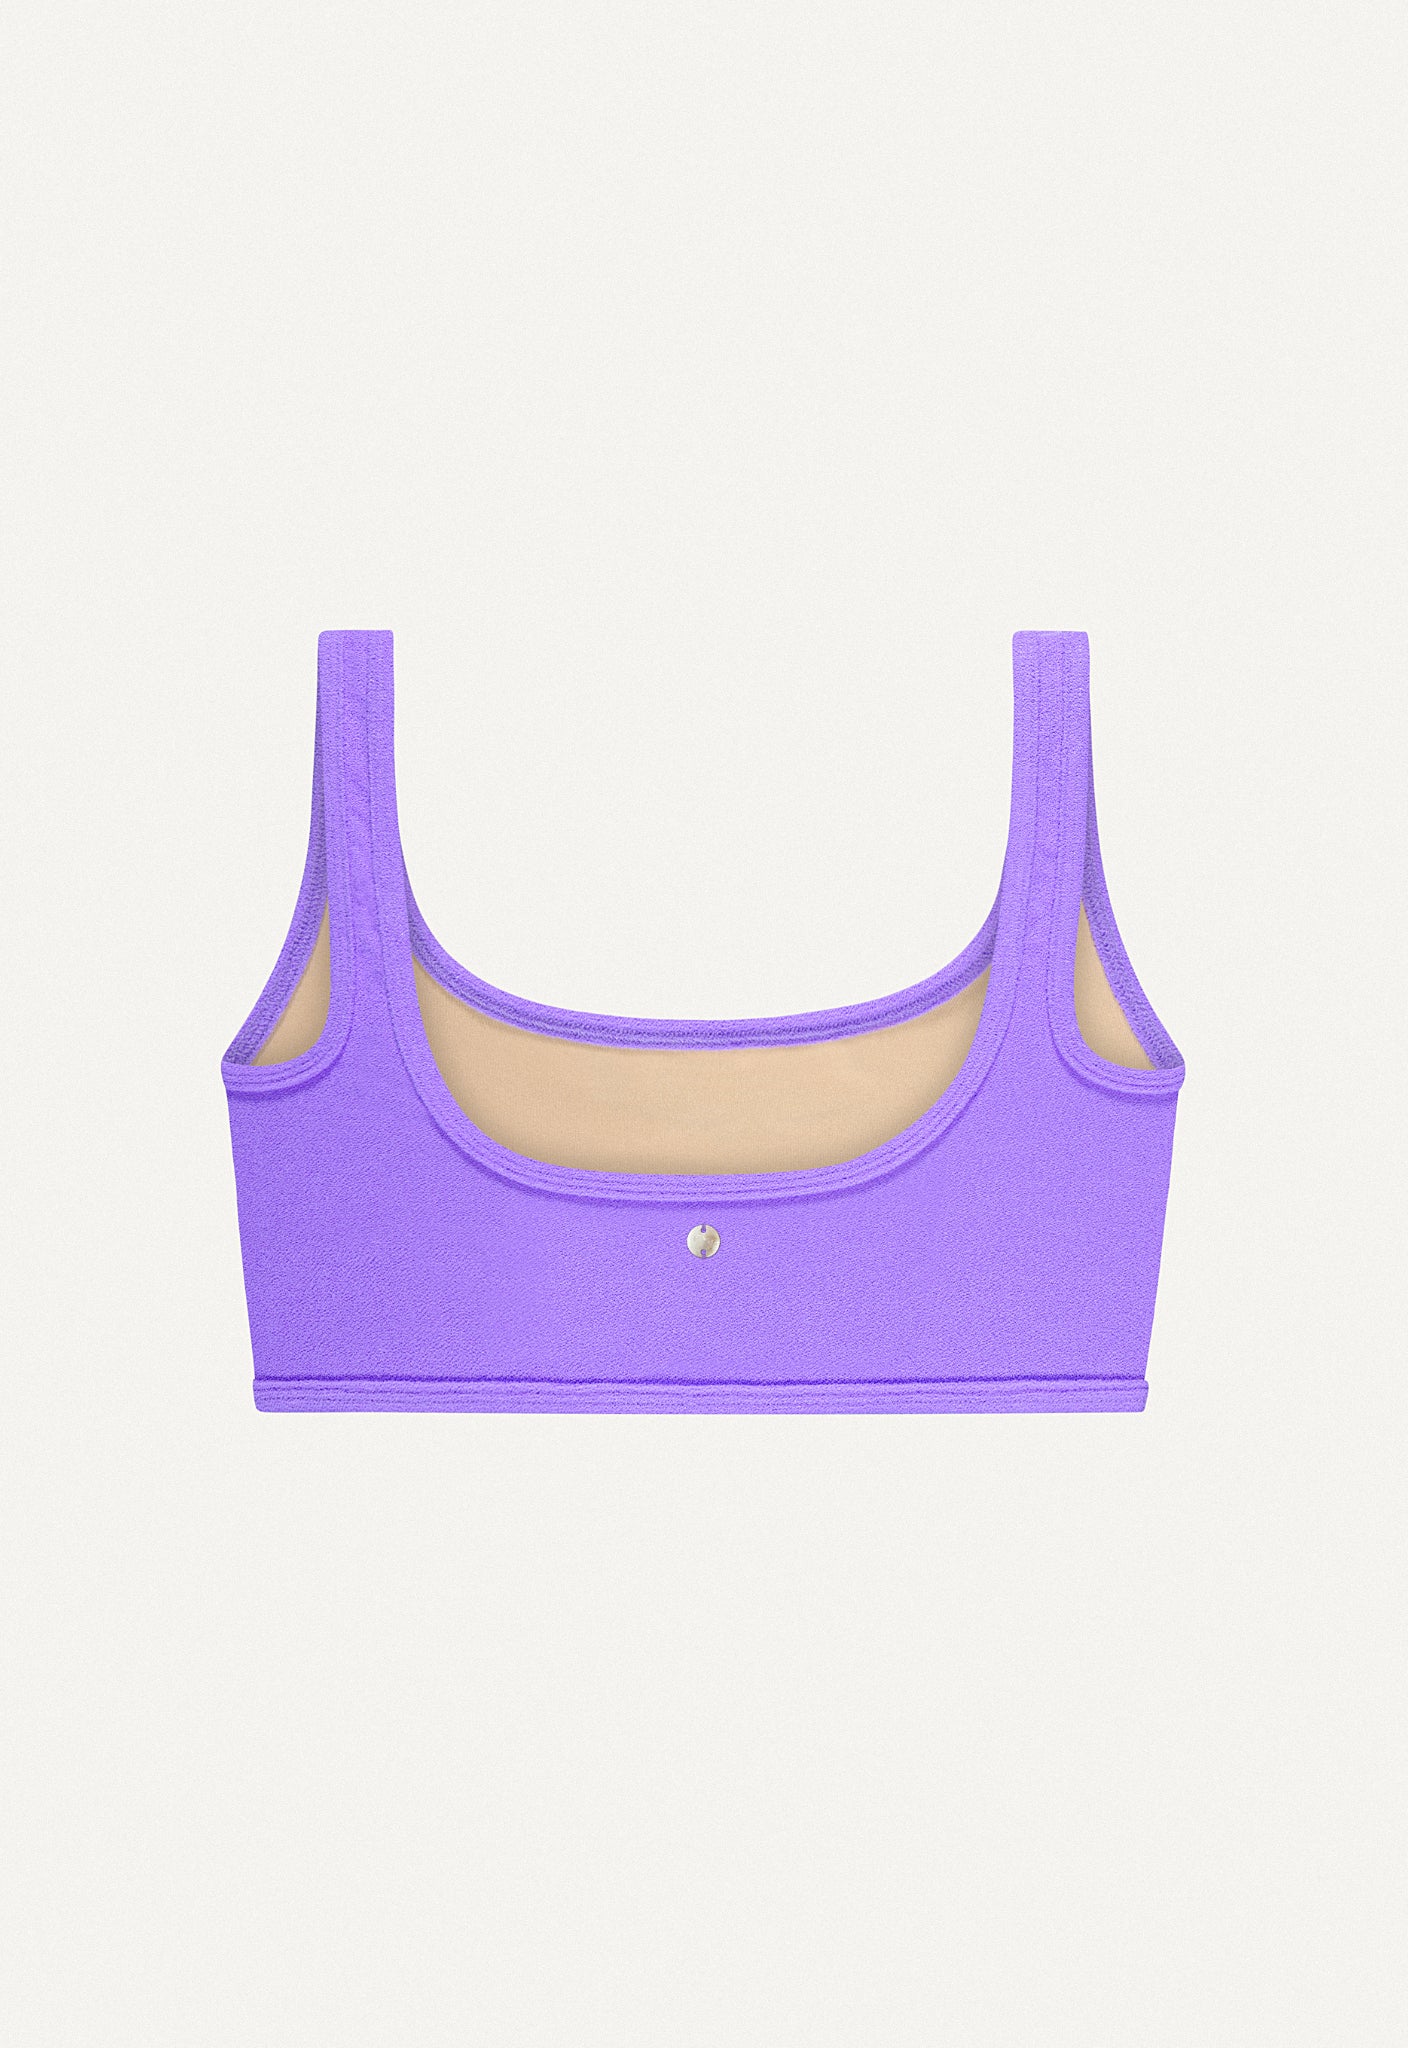 Bikini Top “Vento” in lilac terry